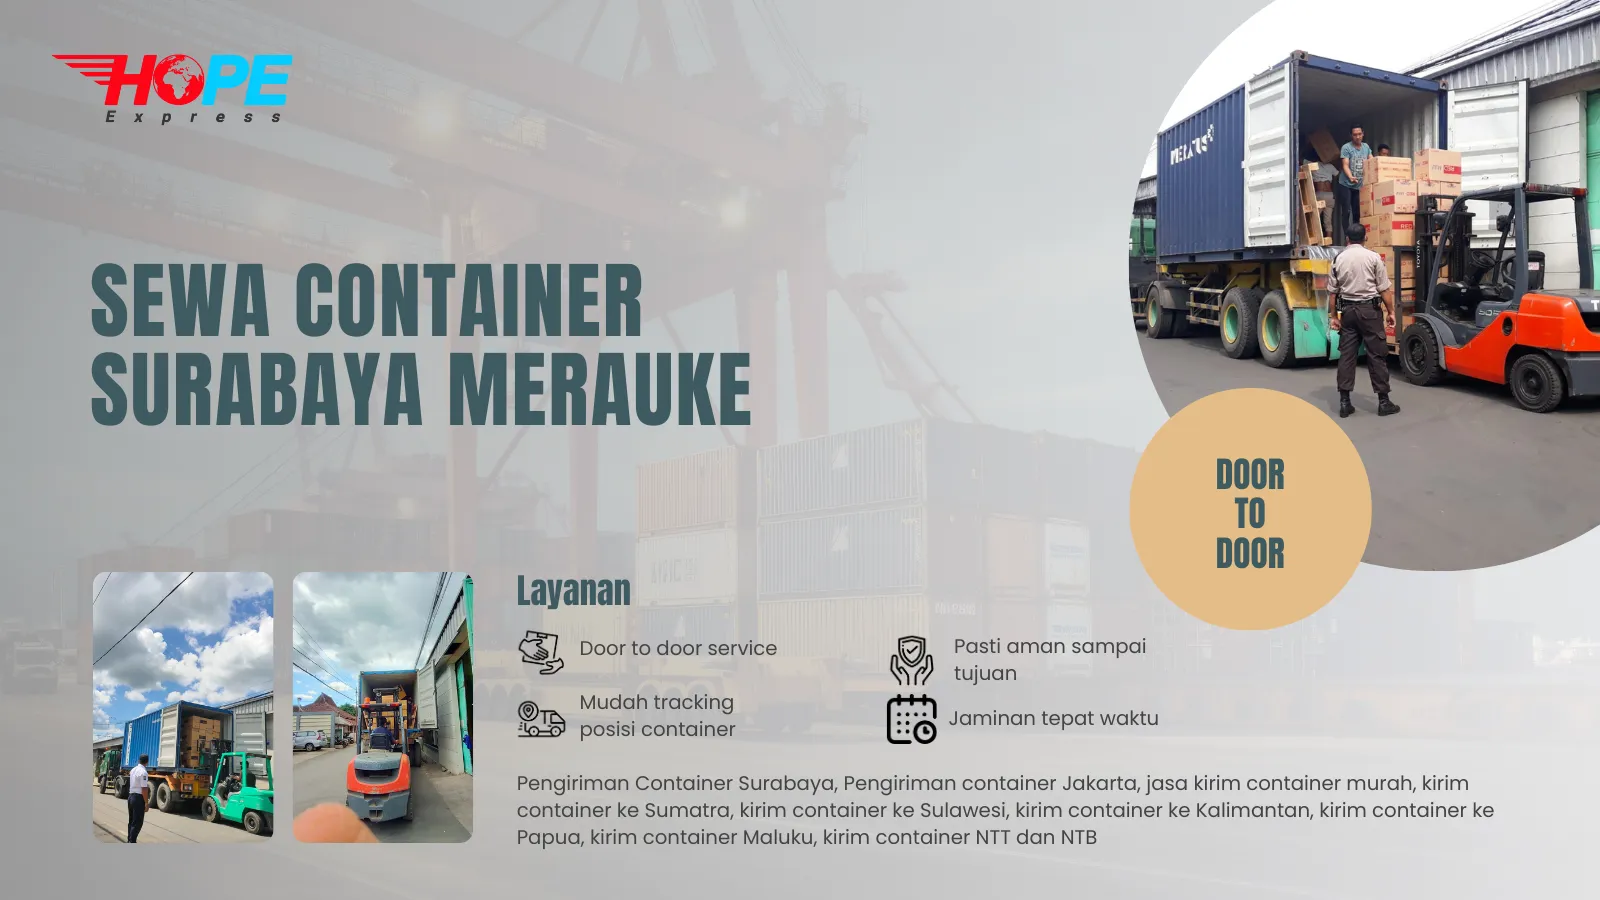 Sewa Container Surabaya Merauke